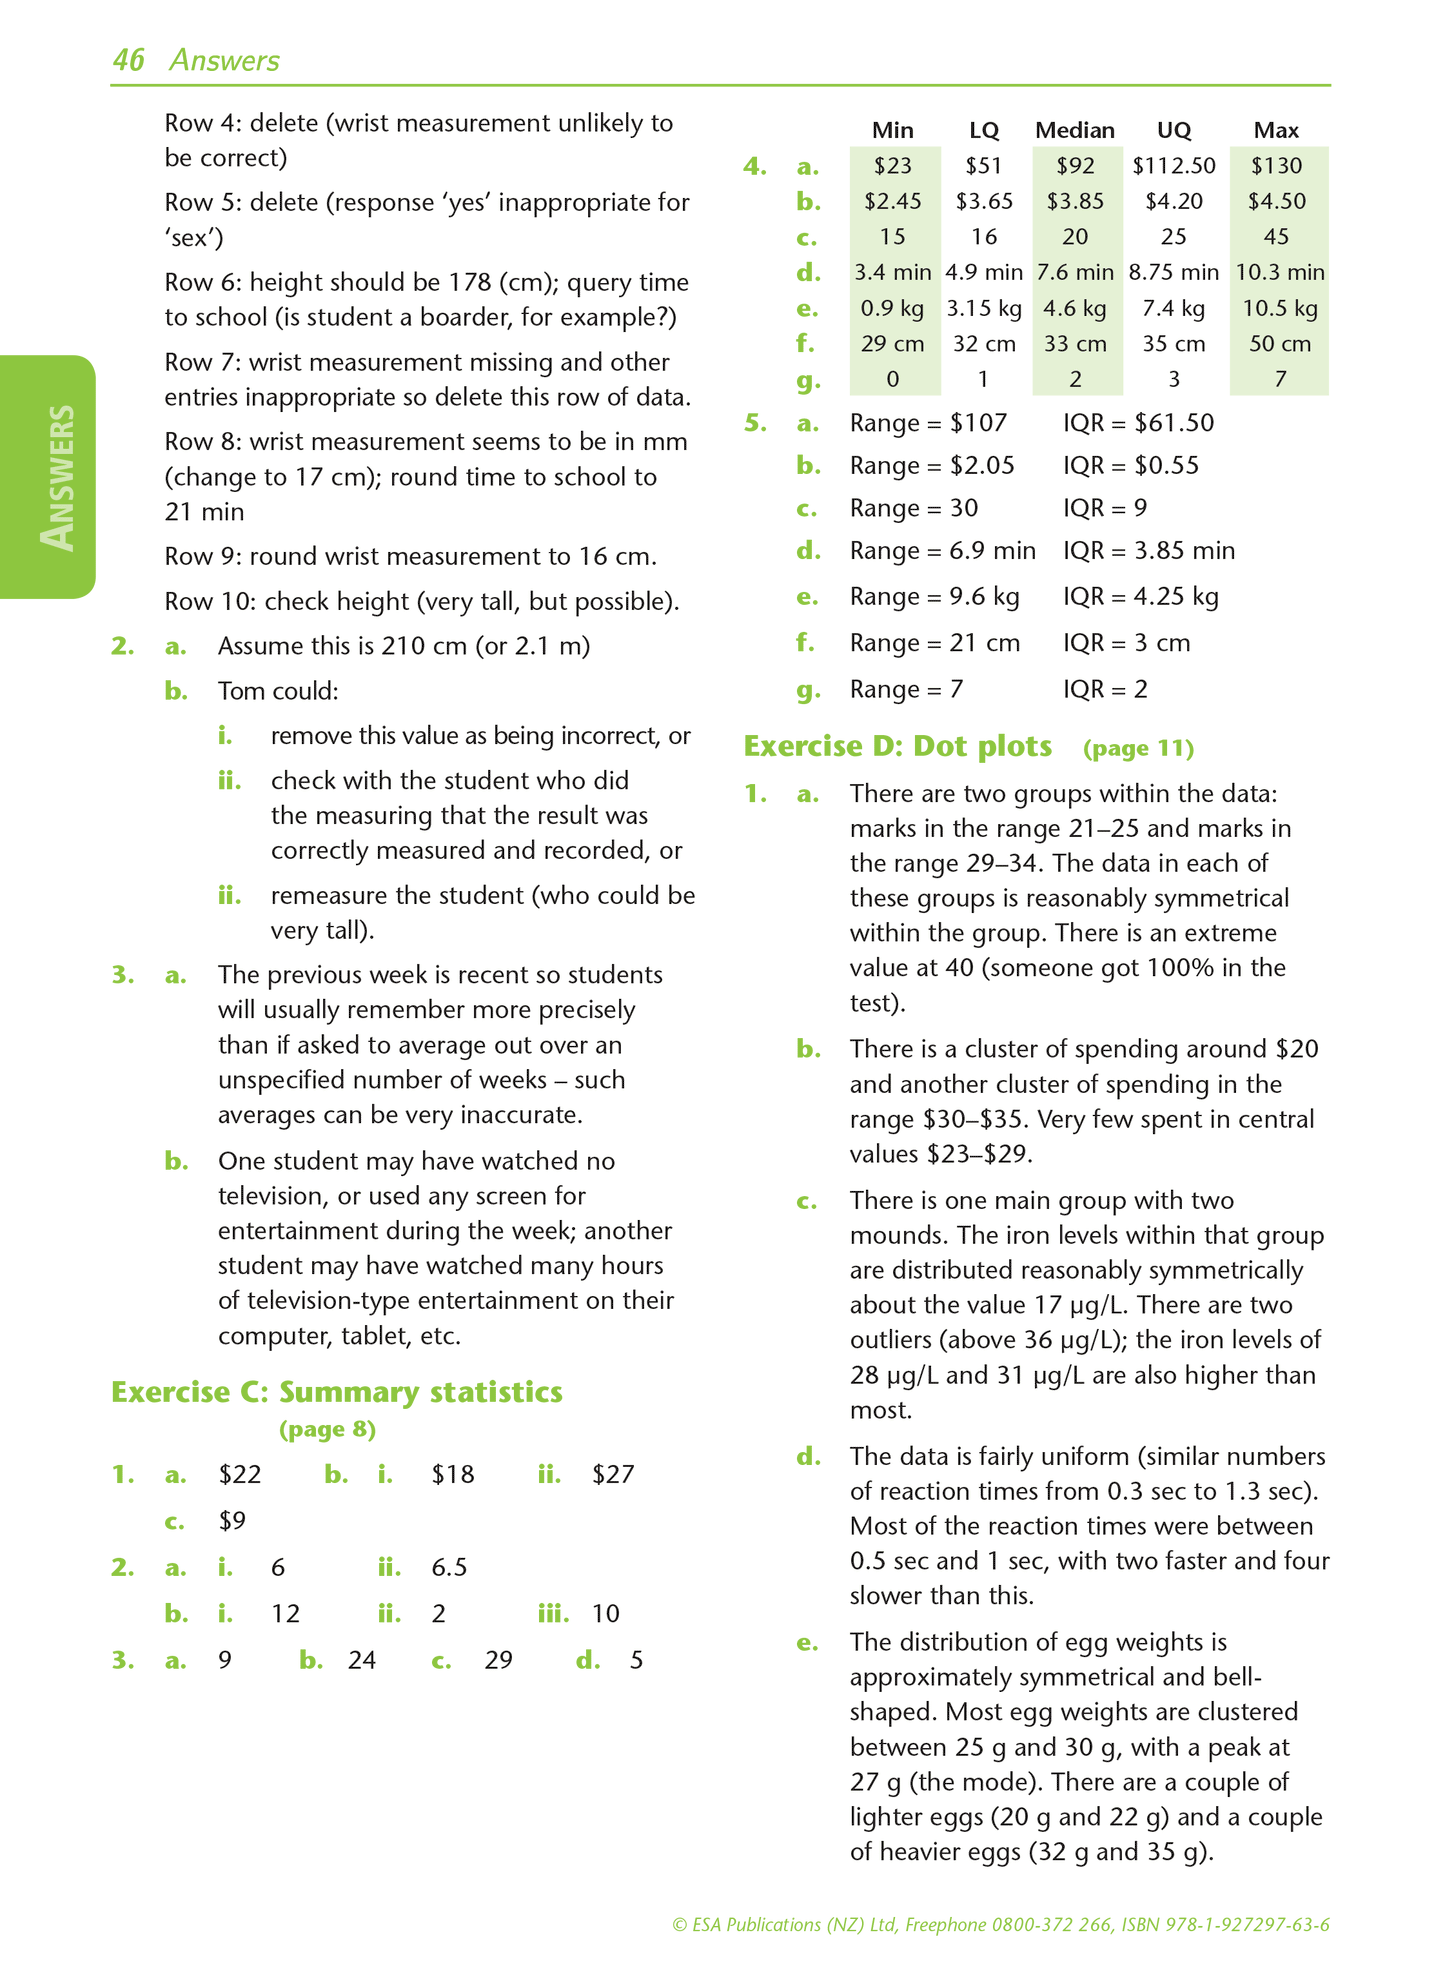 Level 1 Multivariate Data 1.10 Learning Workbook